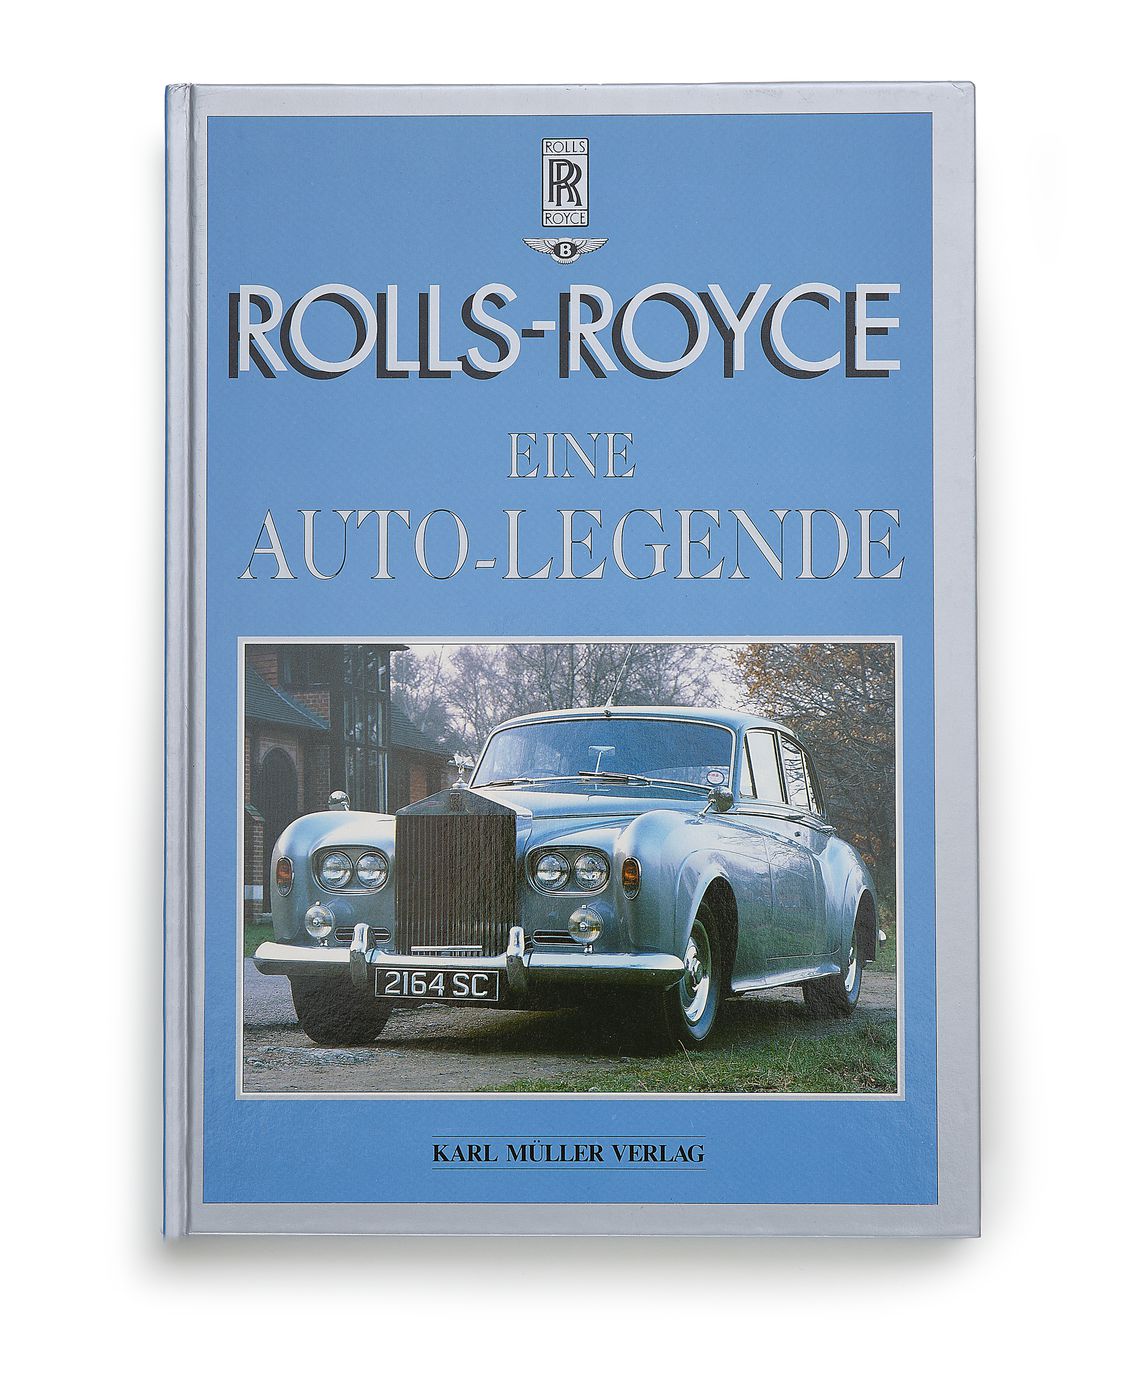 Rolls-Royce
Rolls-Royce
Rolls-Royce